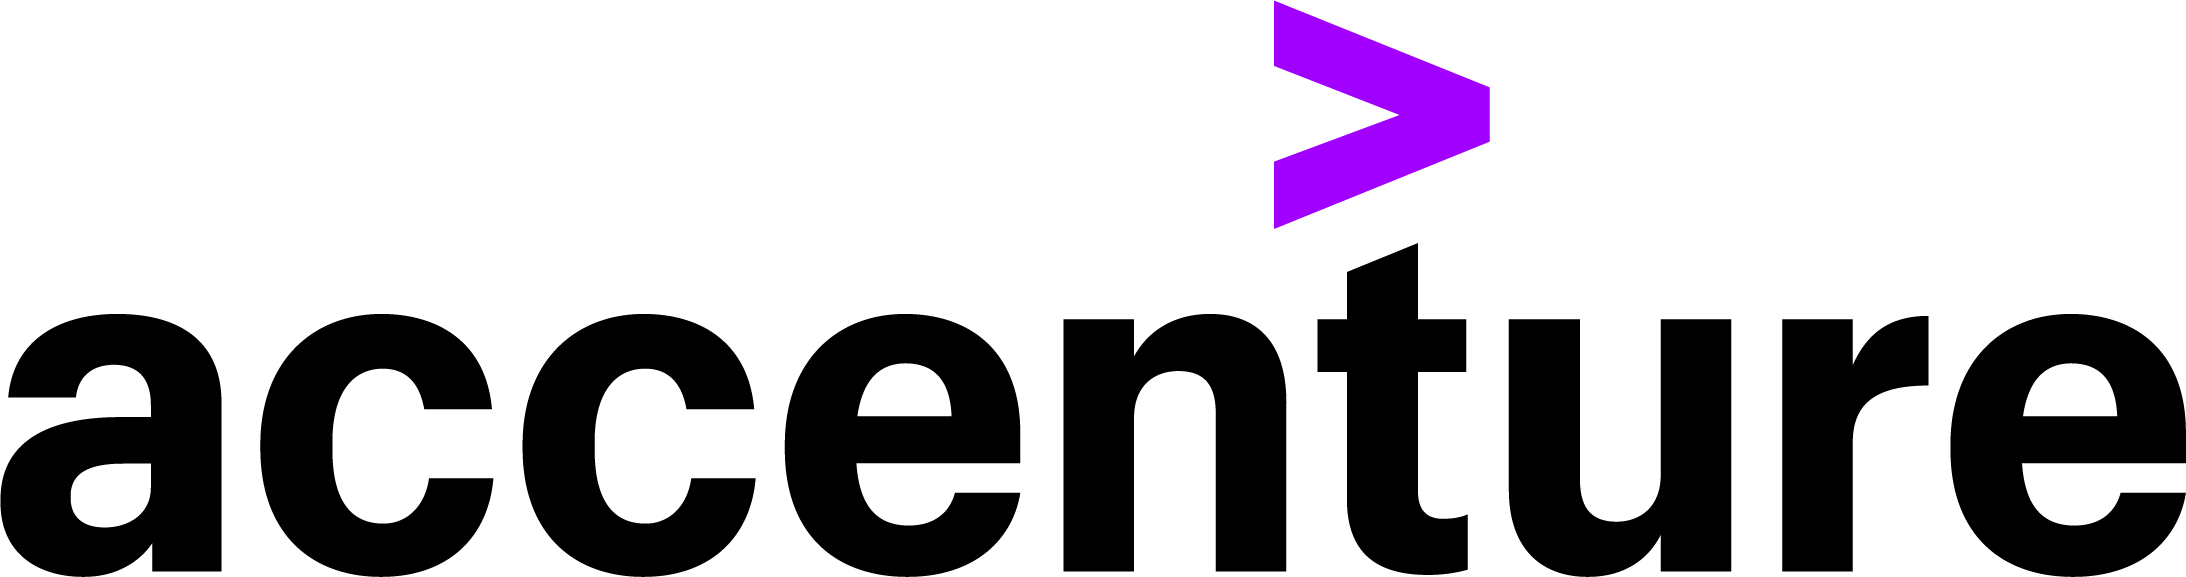 Logotipo da Accenture com uma seta roxa mostrando serviços [MDF].